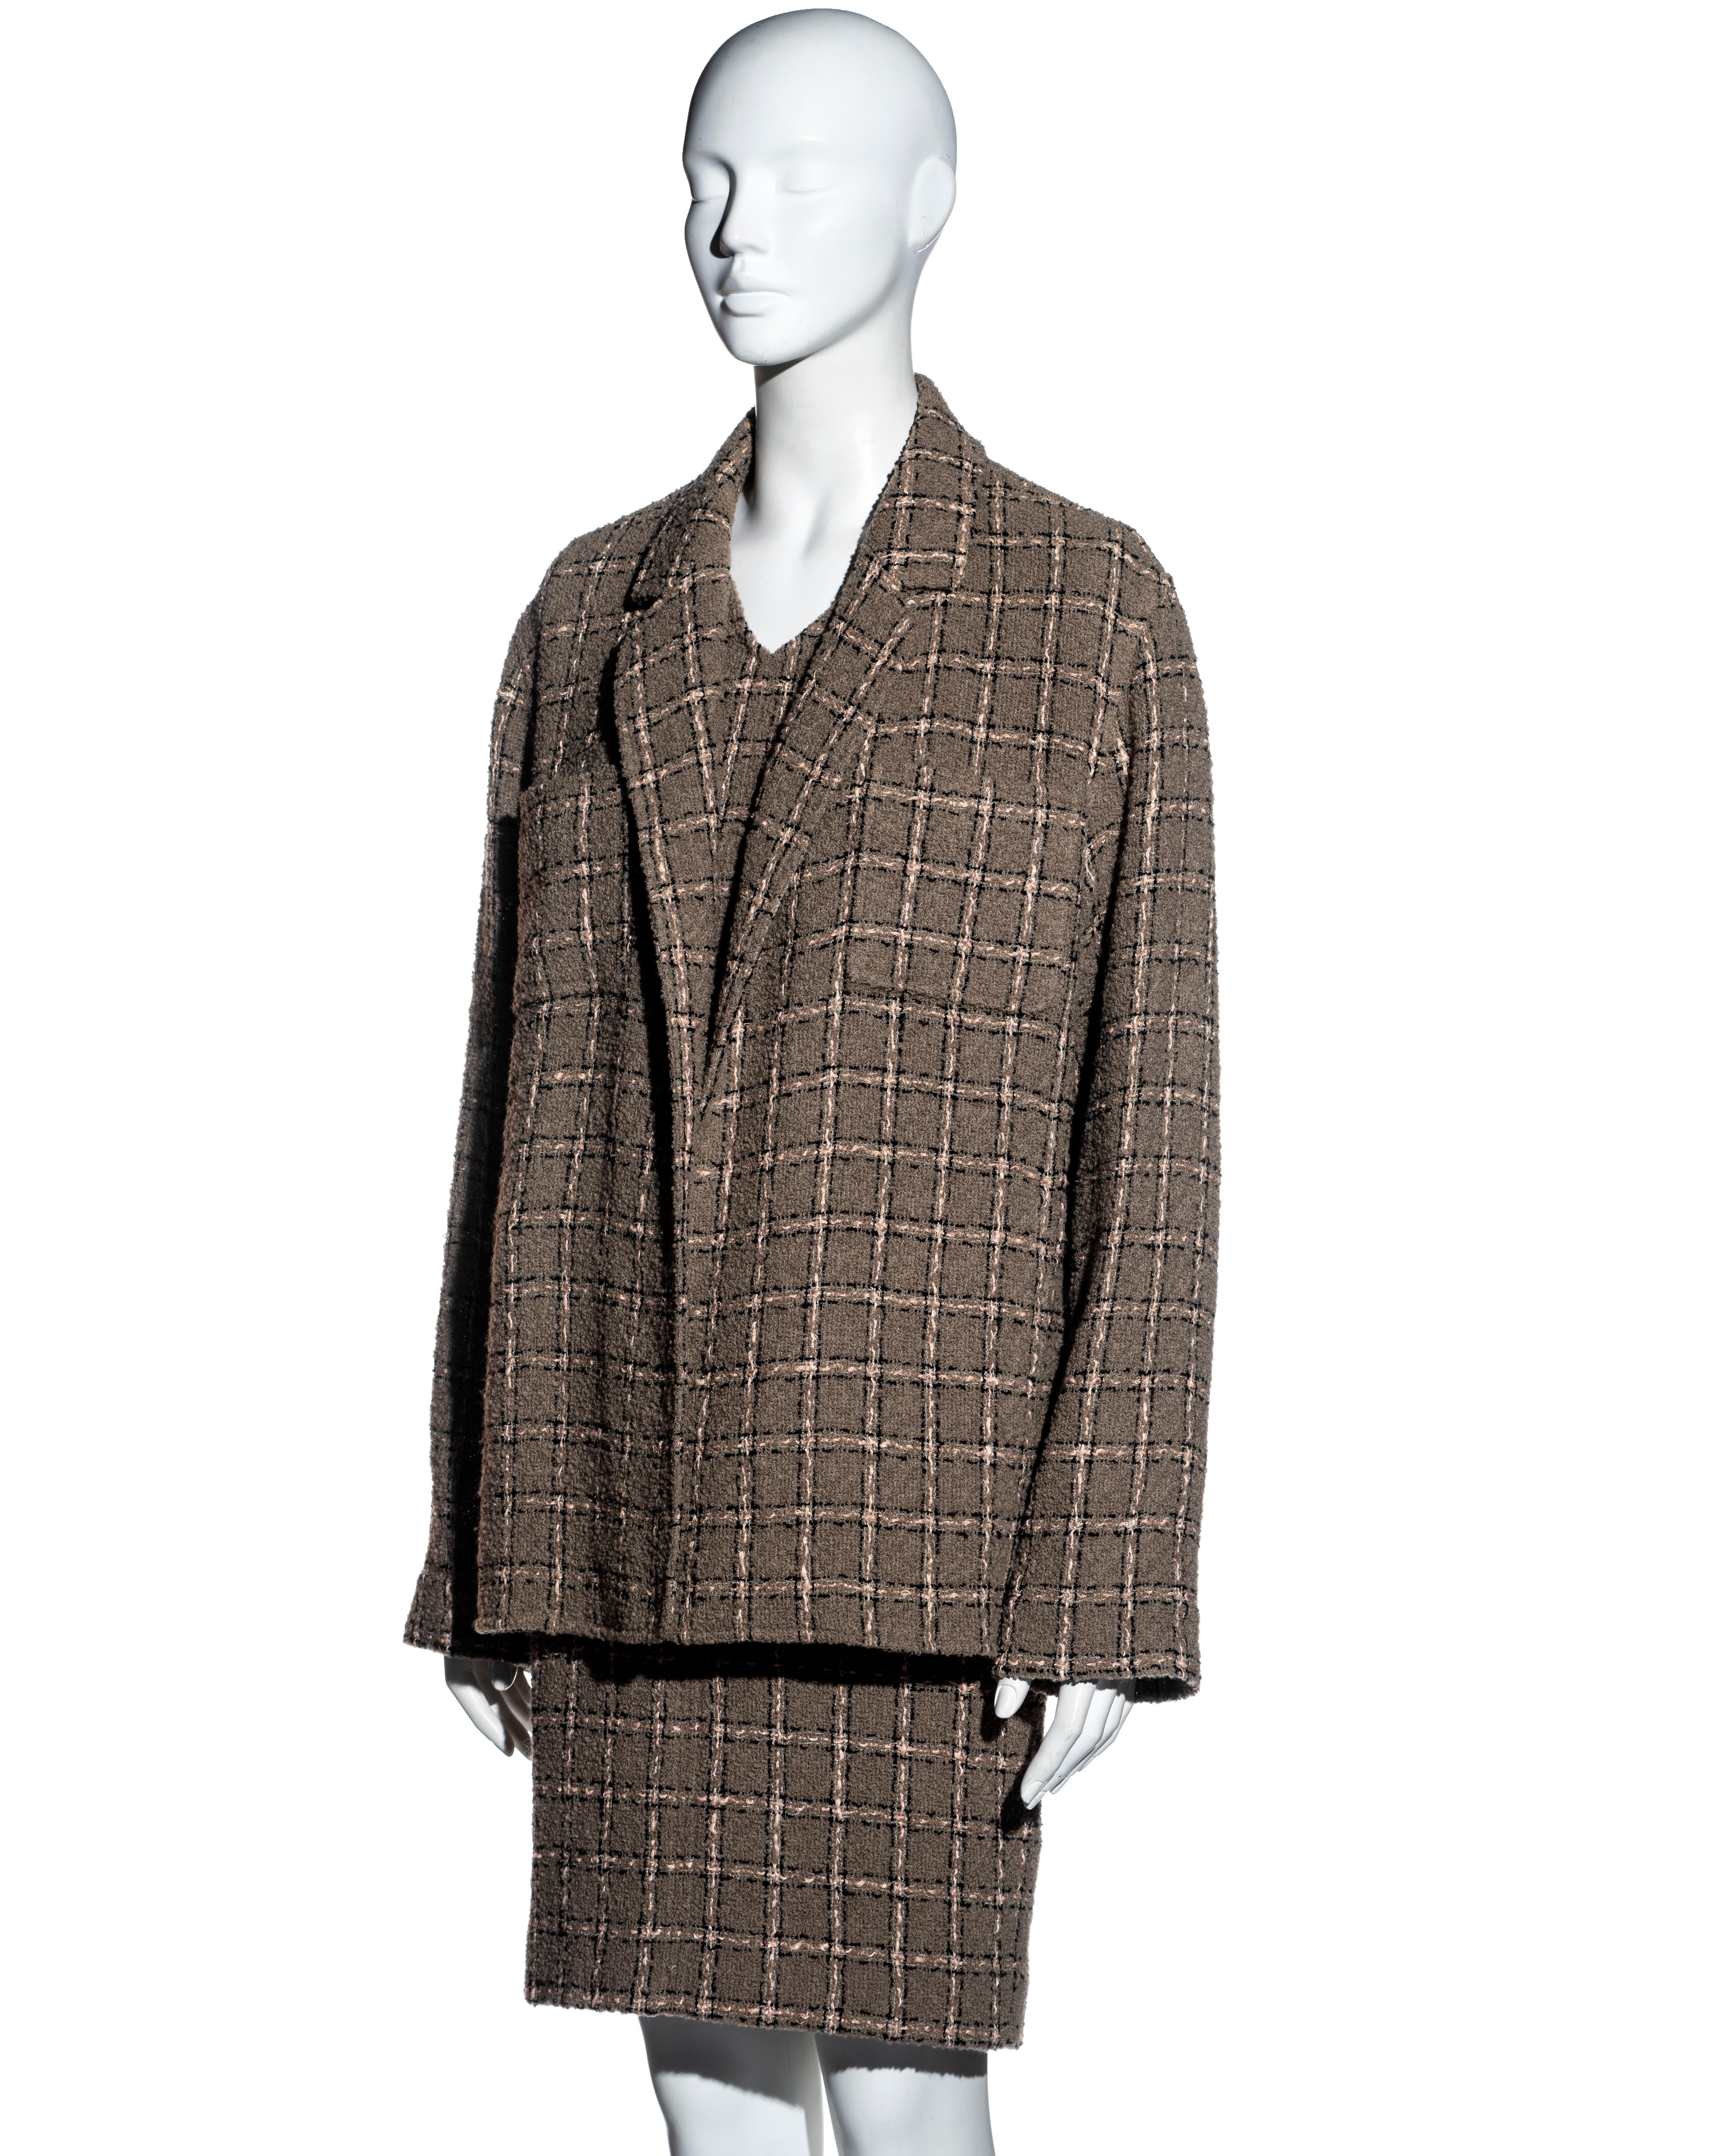 Noir Ensemble robe et veste en laine bouclée taupe à carreaux, Chanel by Karl Lagerfeld, fw 1995 en vente